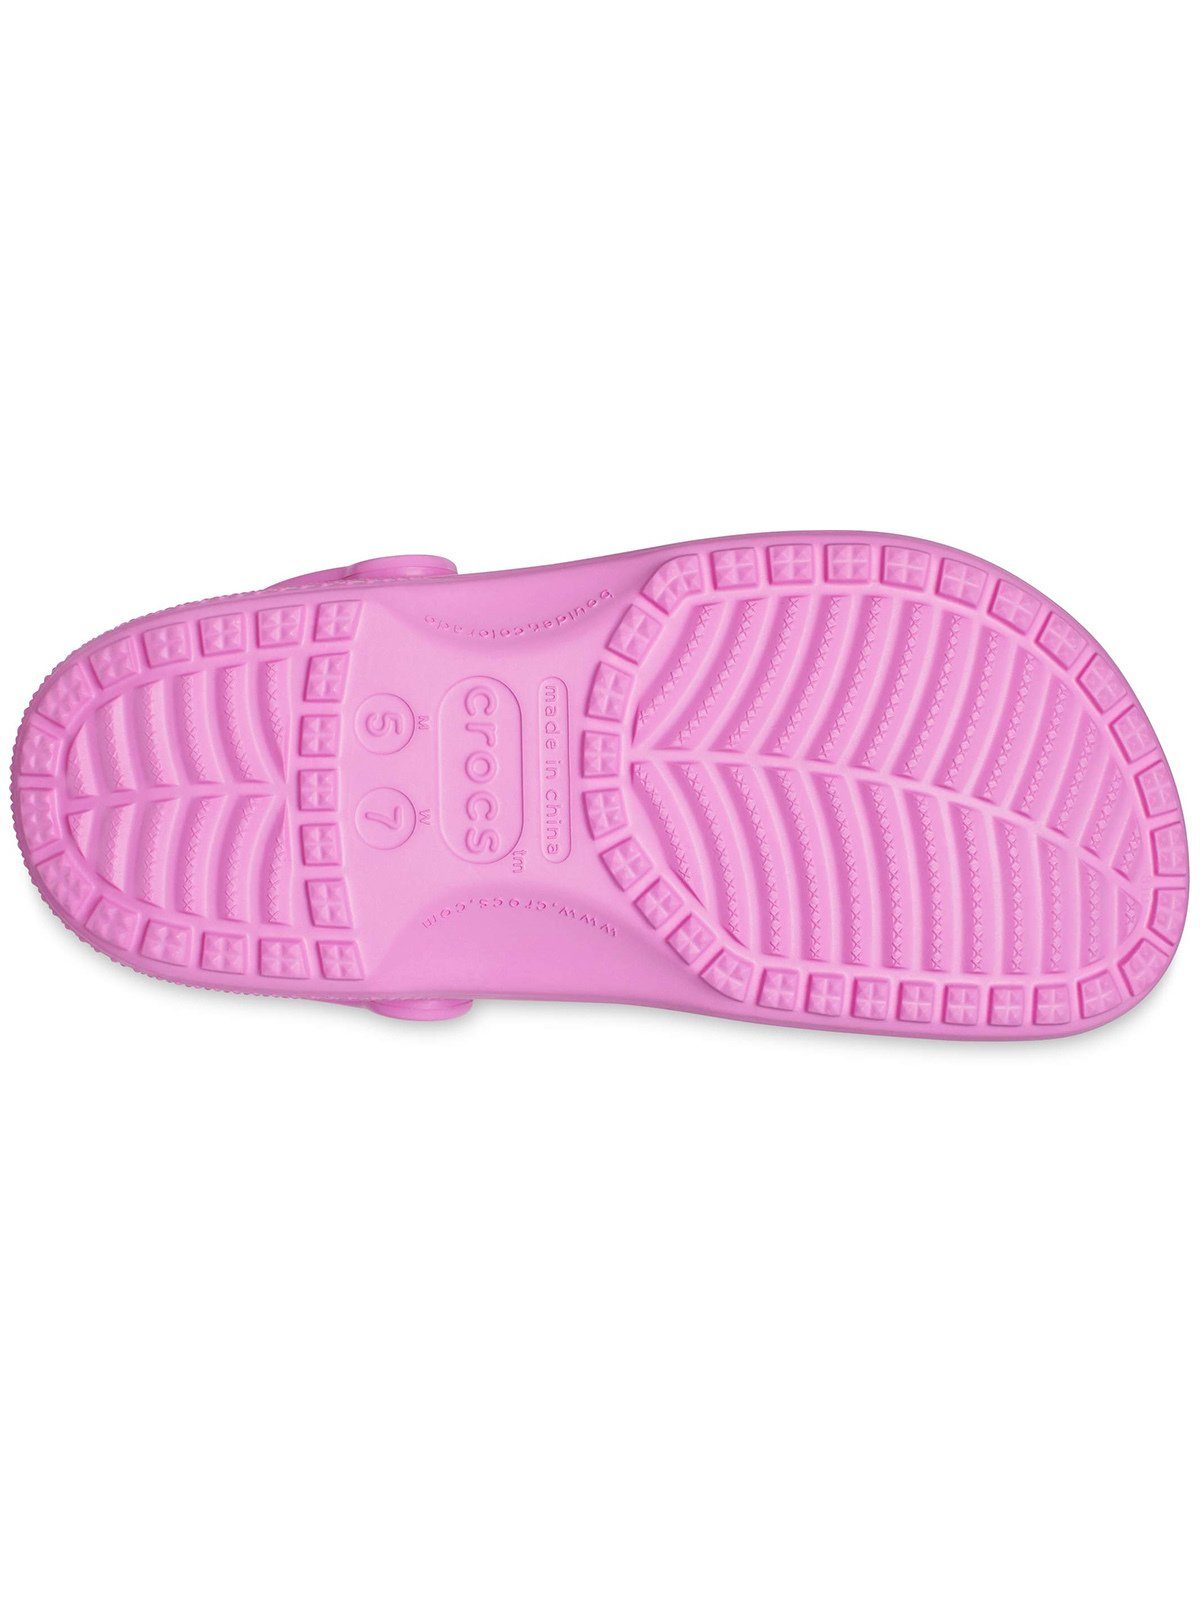 Classic taffy Crocs Clog pink Crocs Clog